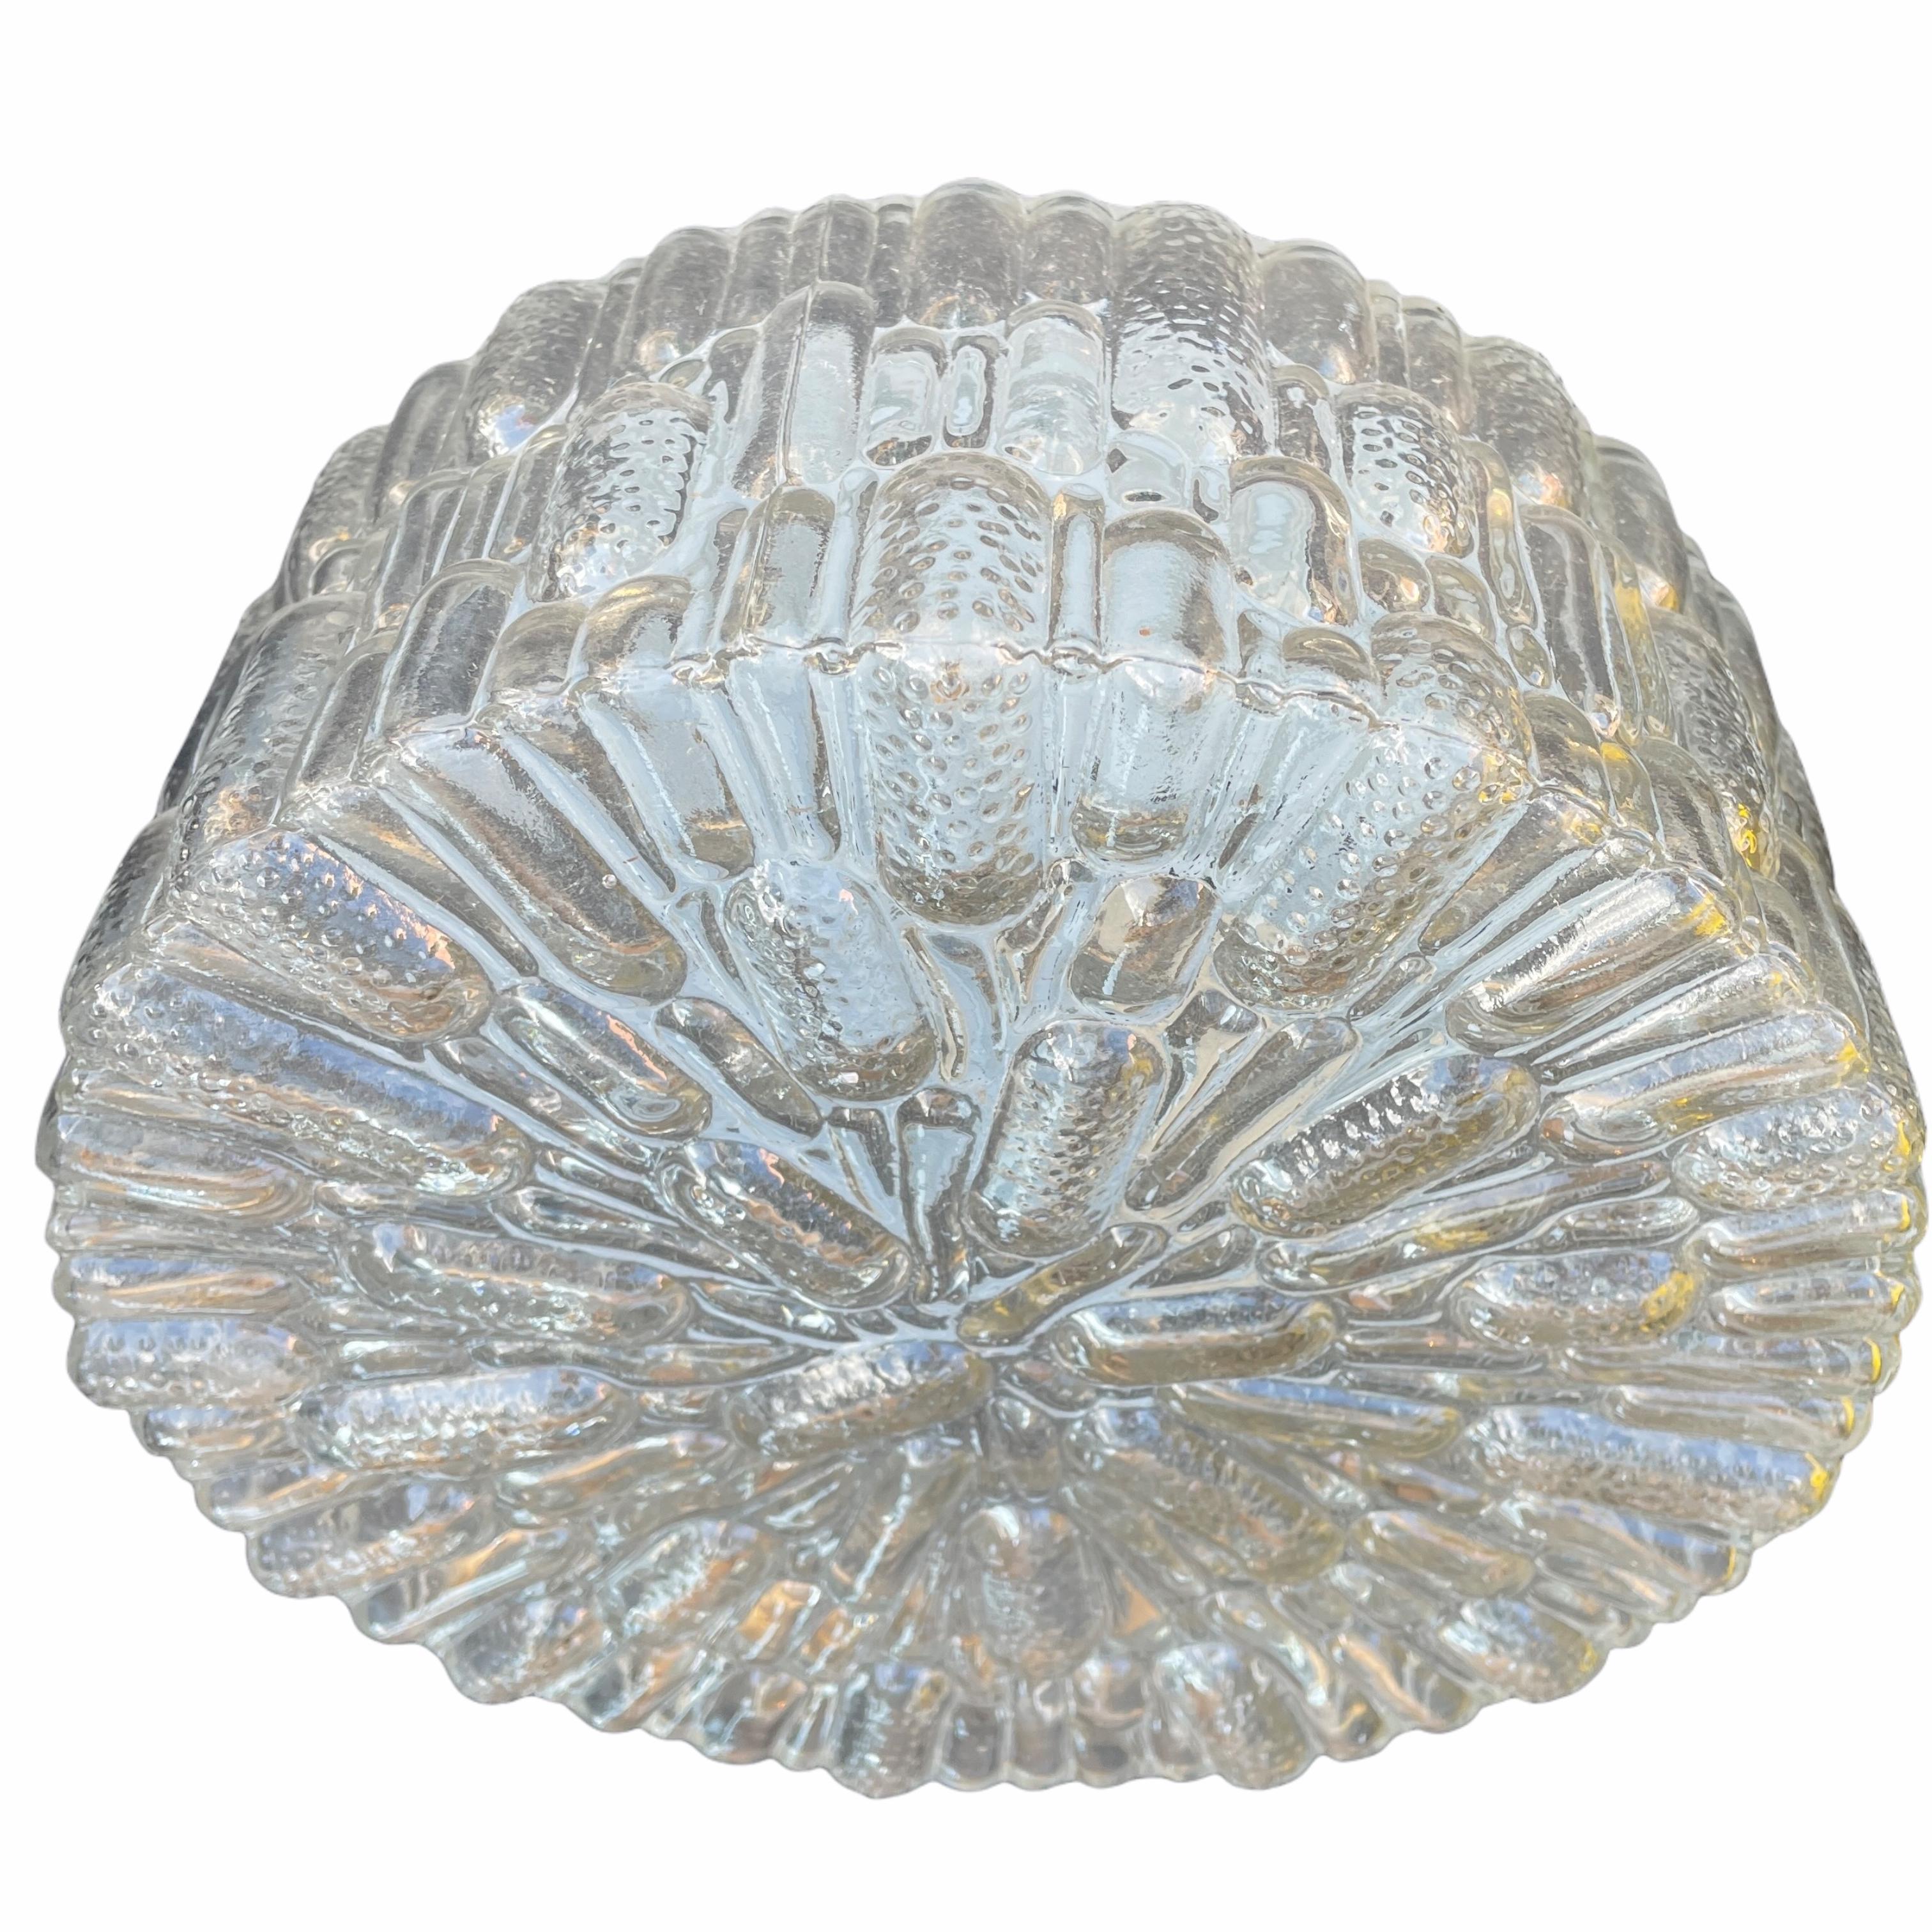 Schöne Blase Glas Muster flush mount. Hergestellt in Deutschland, der Glashütte Limburg zugeschrieben. Wunderschöne Unterputzleuchte aus strukturiertem Glas mit Metallhalterung. Die Leuchte benötigt eine europäische E27-Edison- oder Medium-Glühbirne